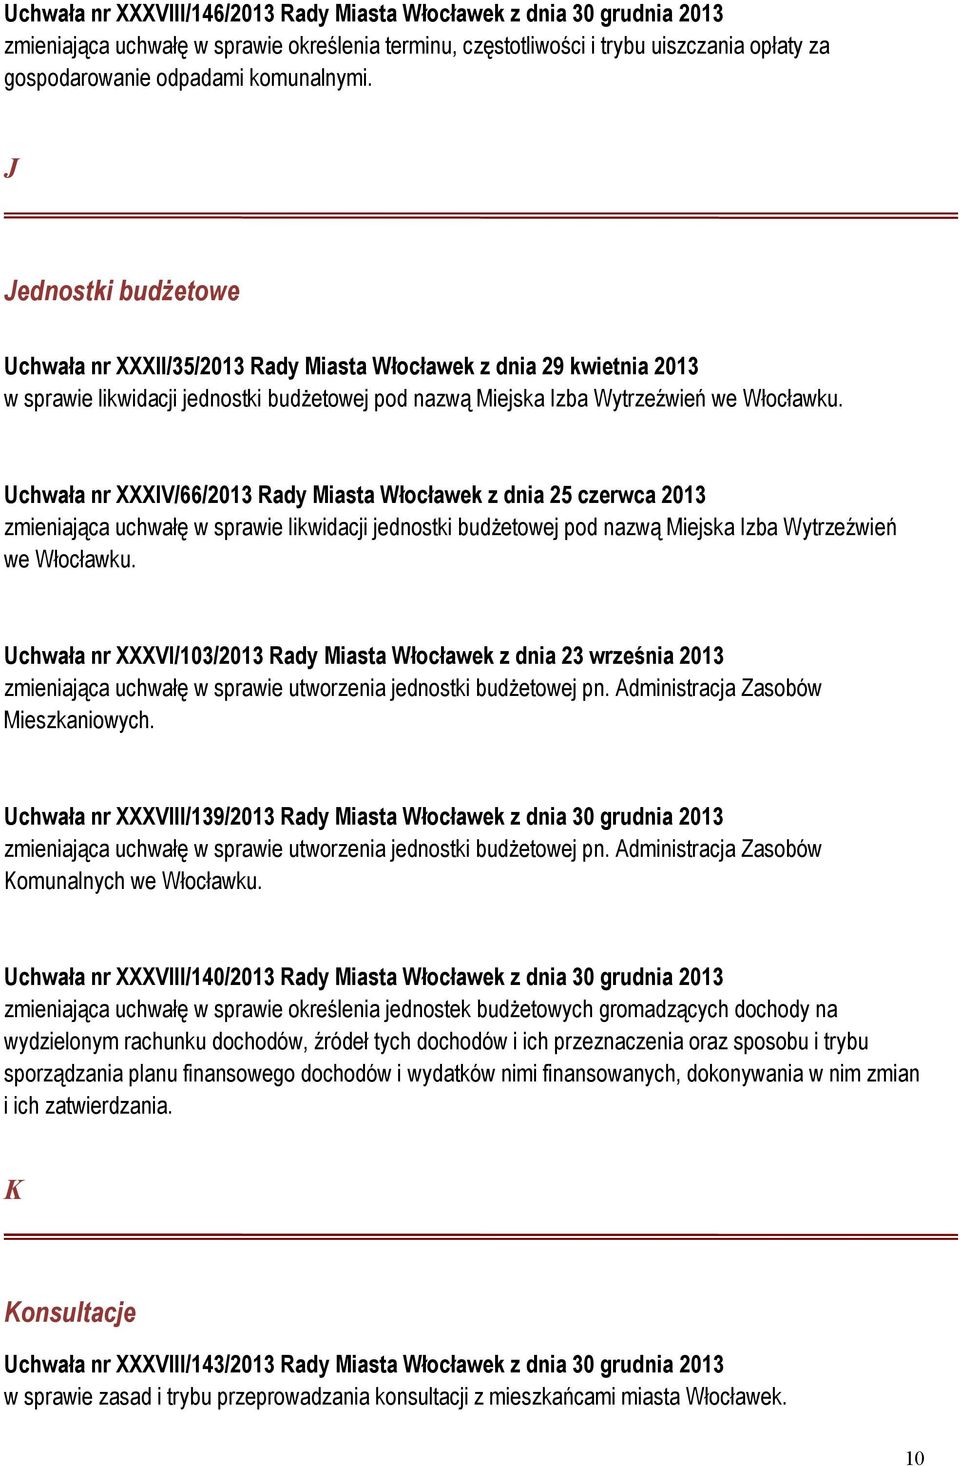 Uchwała nr XXXIV/66/2013 Rady Miasta Włocławek z dnia 25 czerwca 2013 zmieniająca uchwałę w sprawie likwidacji jednostki budżetowej pod nazwą Miejska Izba Wytrzeźwień we Włocławku.